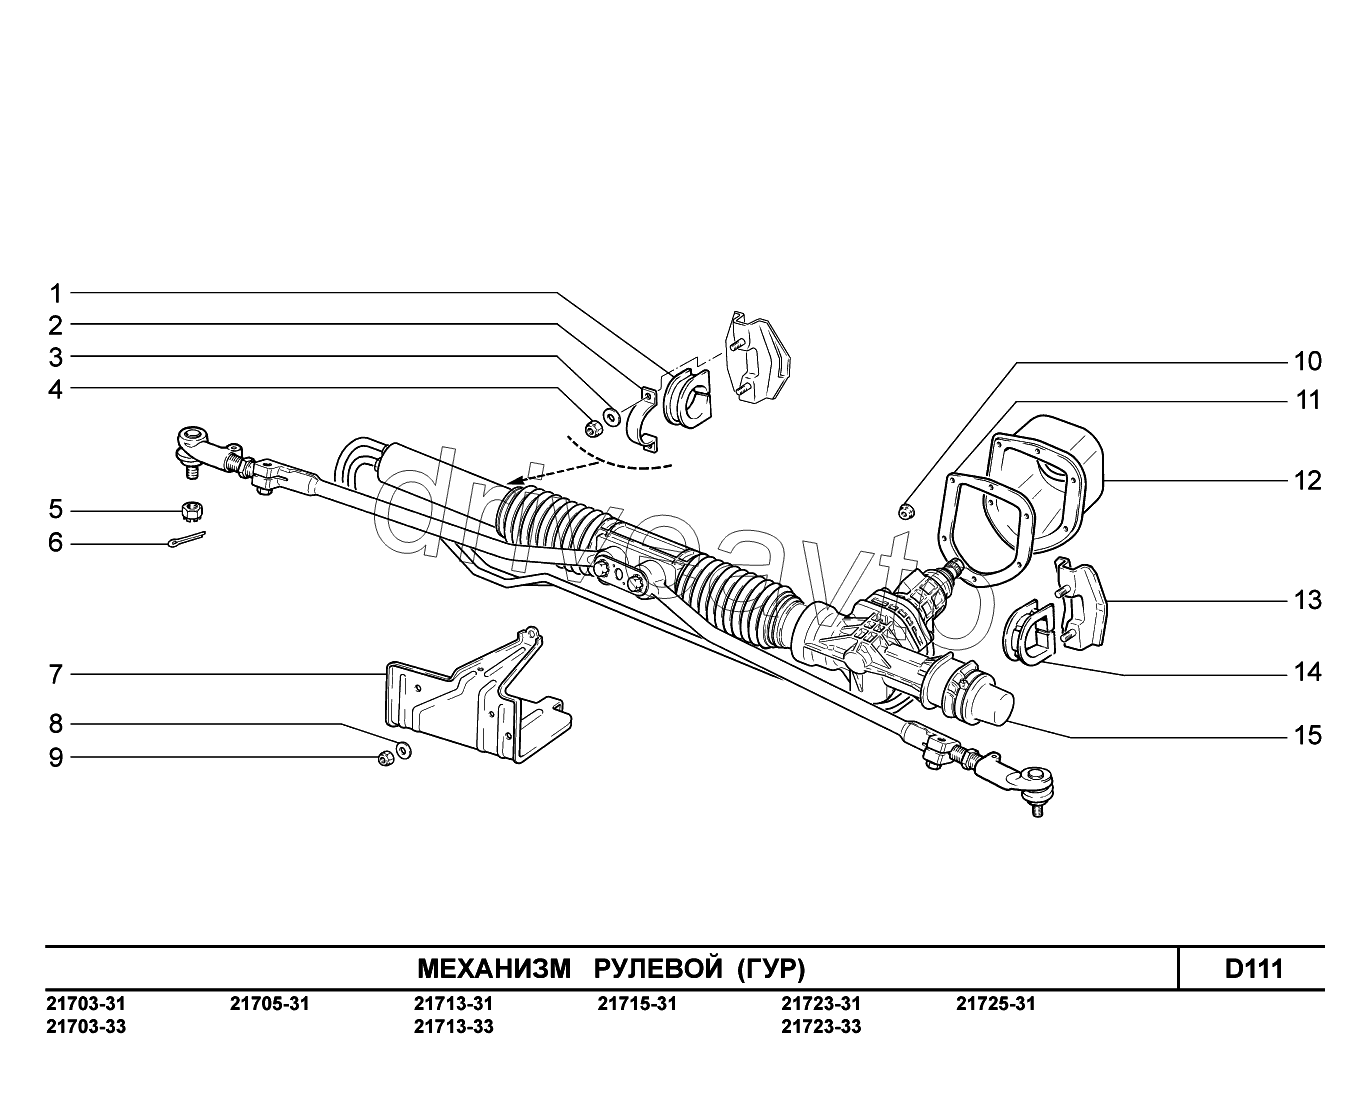 D111. Механизм рулевой